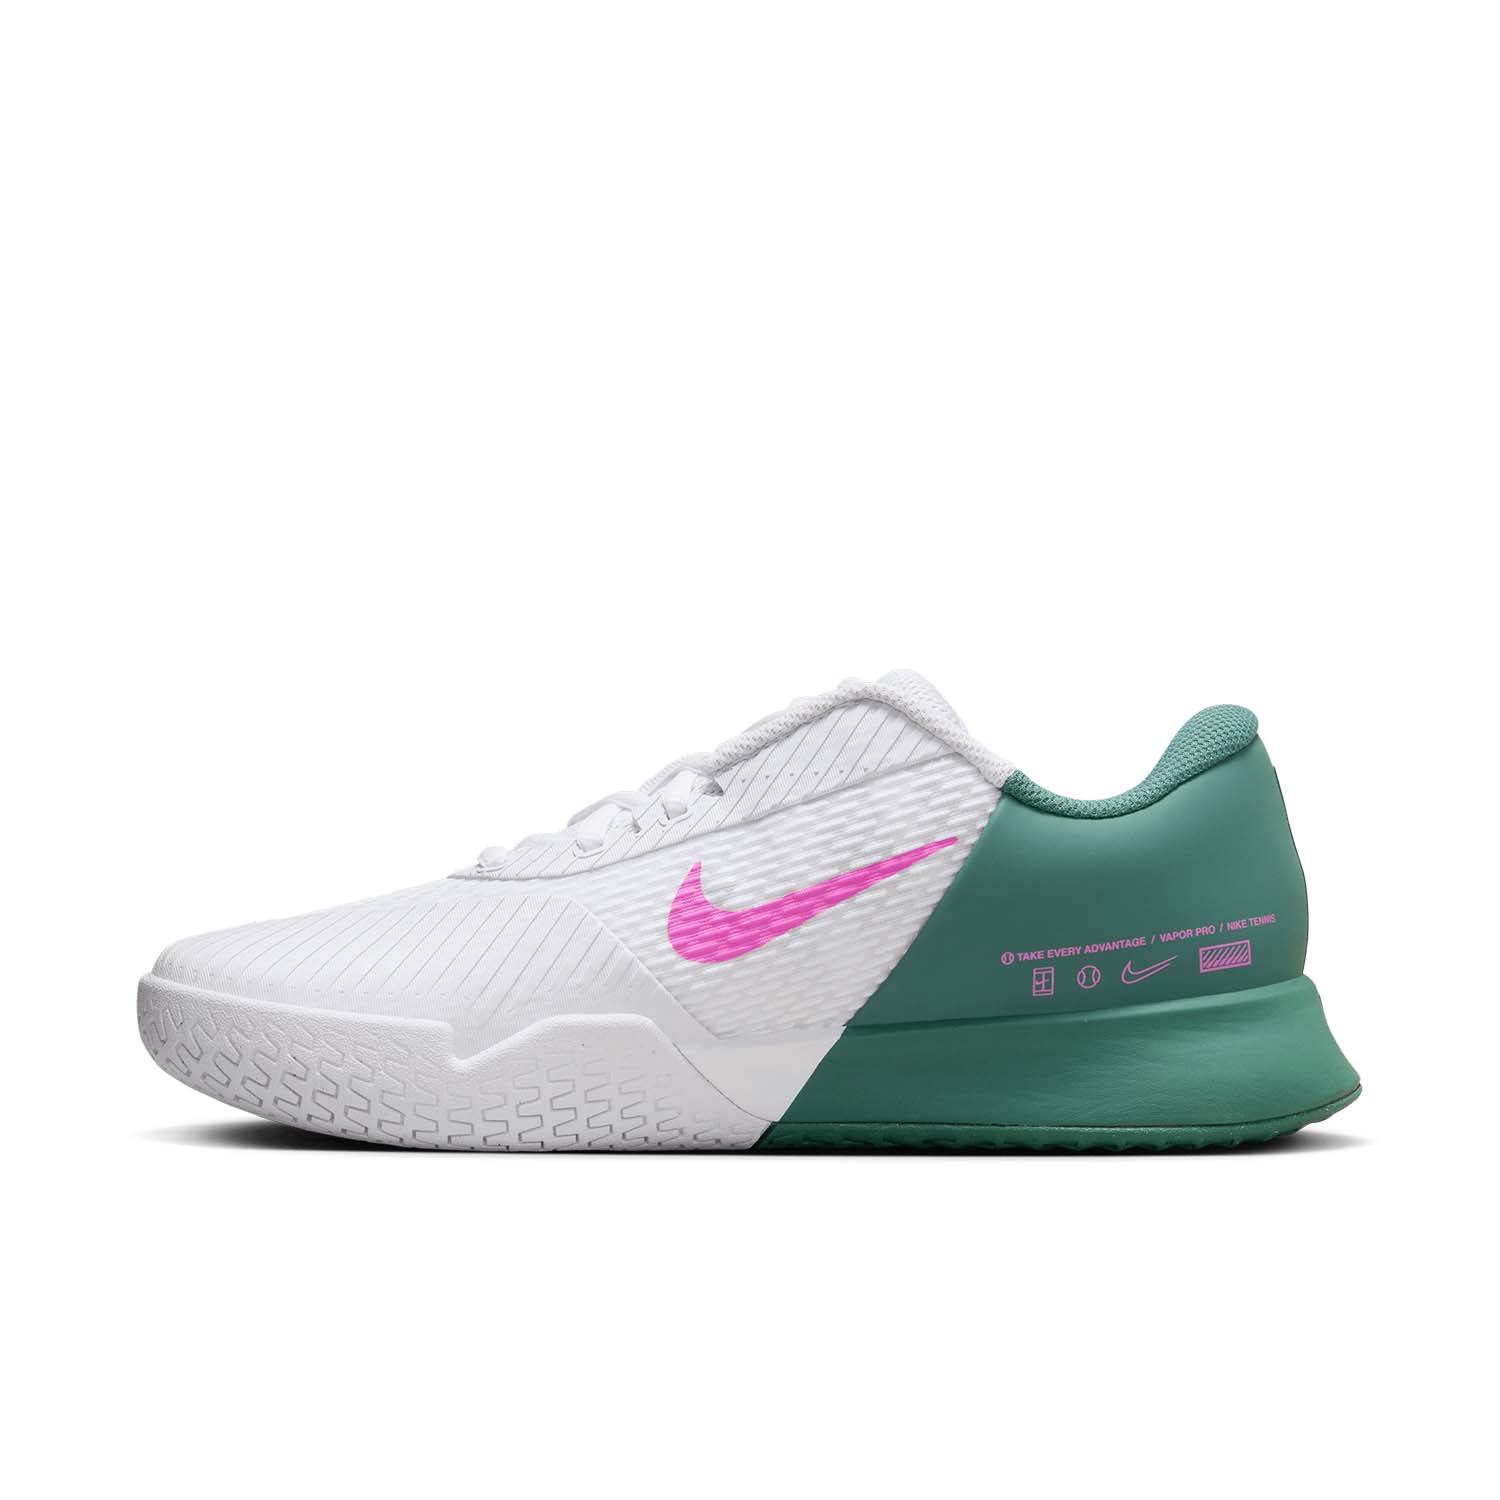 Nike Court Air Zoom Vapor Pro 2 HC - White/Playful Pink/Bicoastal/Black